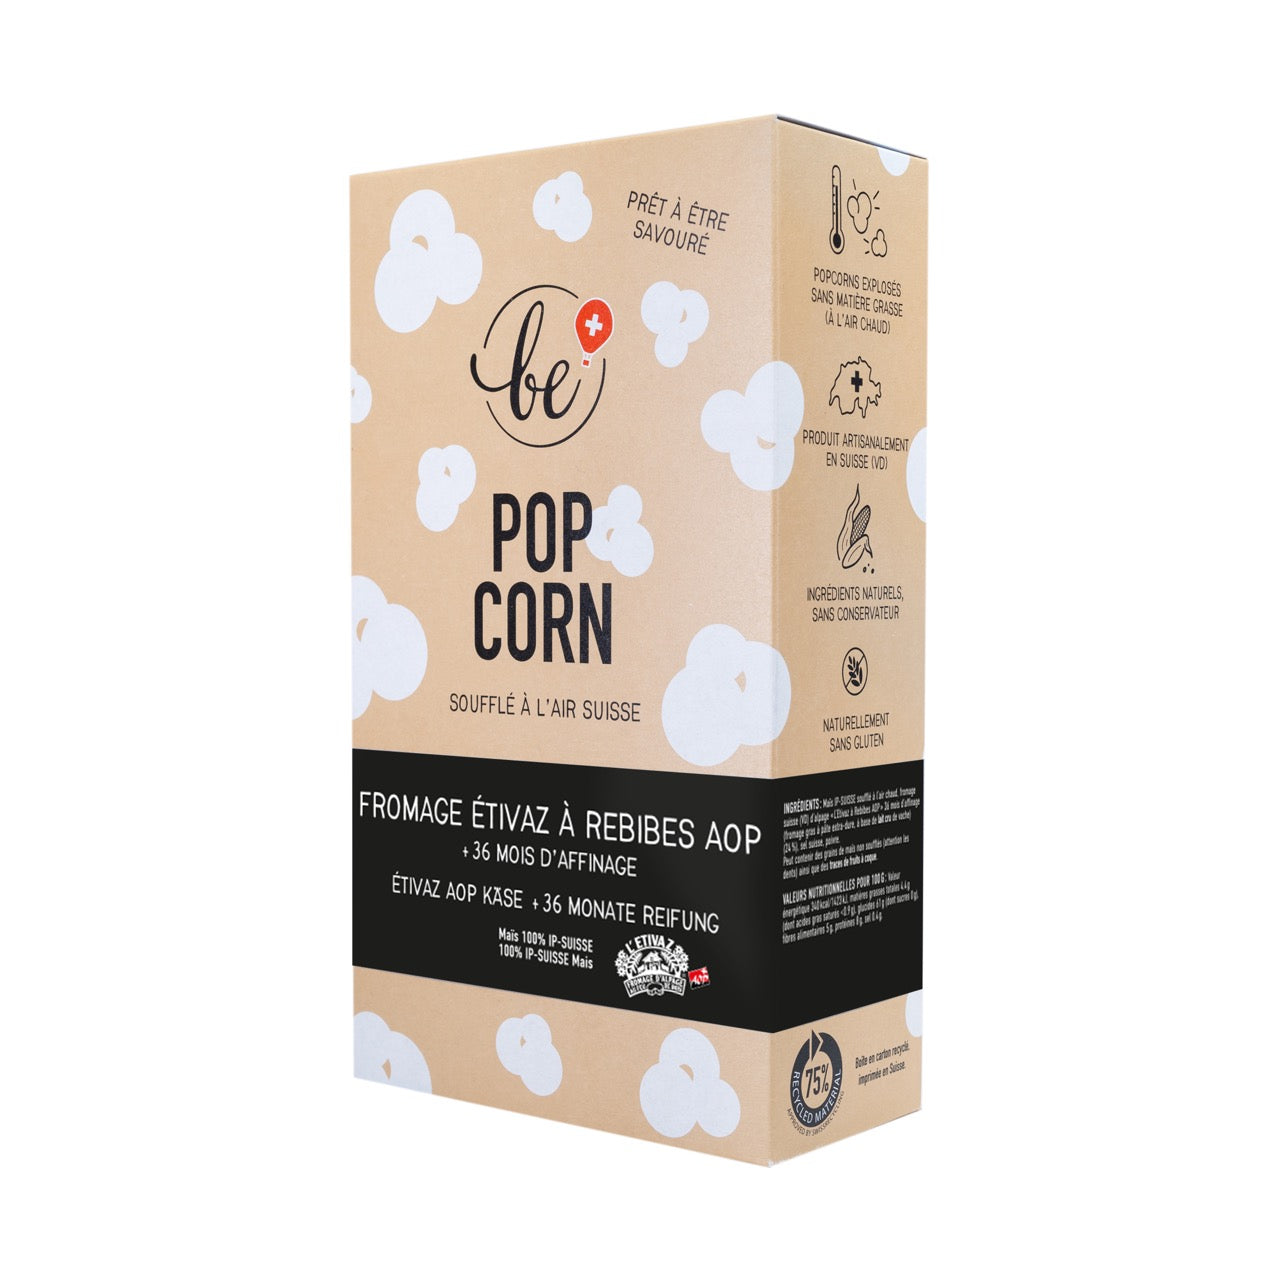 Grand paquet de popcorn à l'Étivaz à rebibes et 36 mois d'affinage